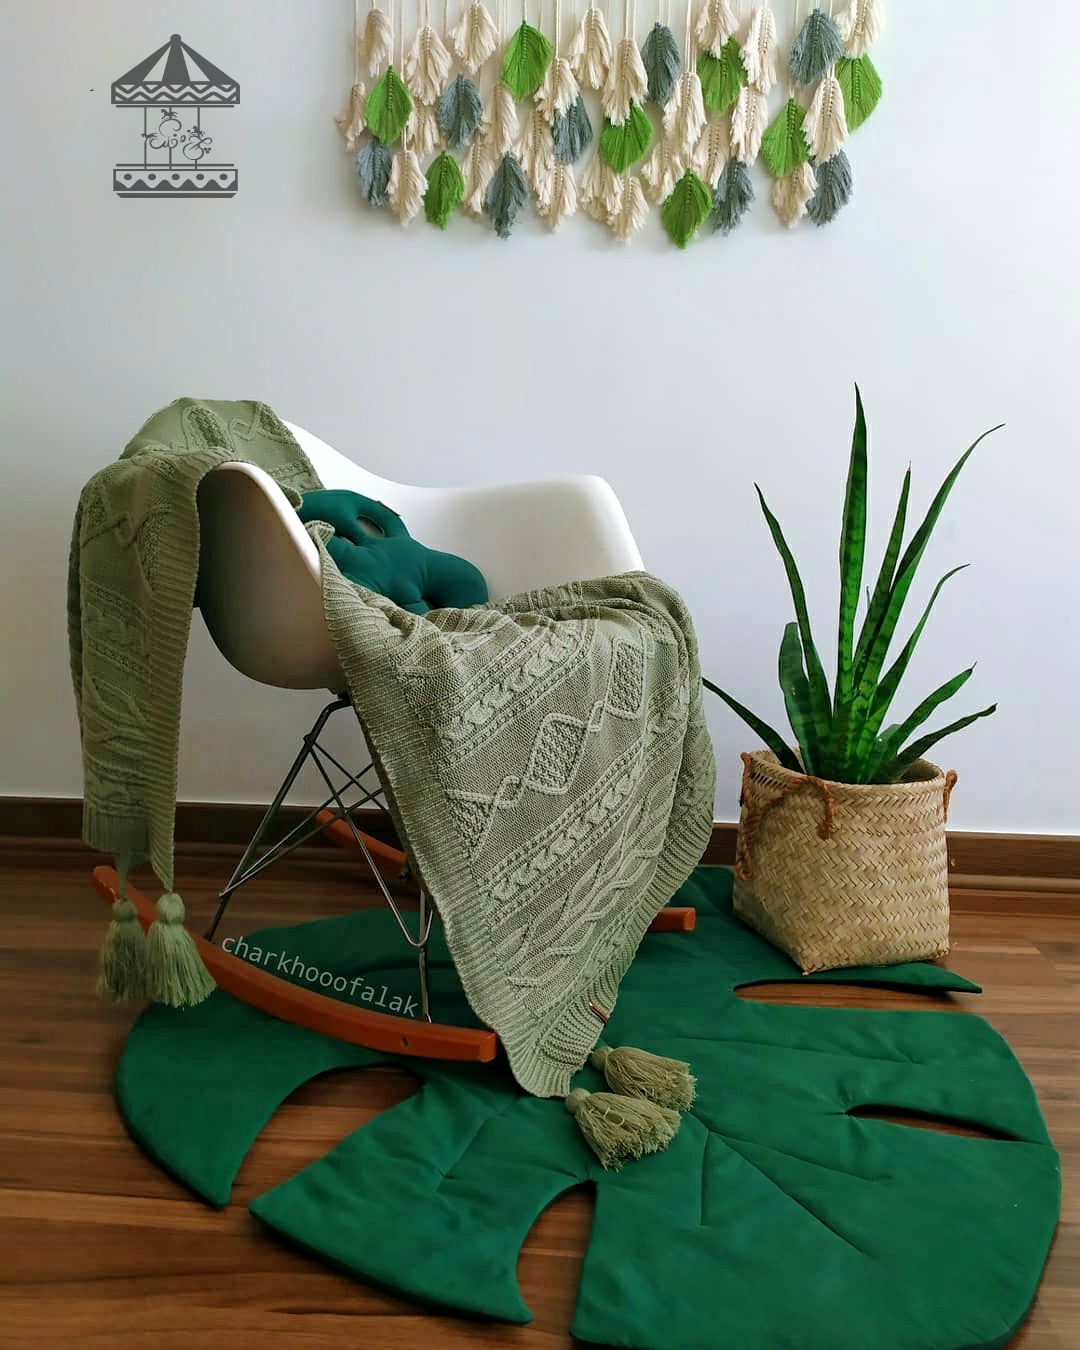 شال مبل و تخت طرح گندمزار رنگ سبز سدری